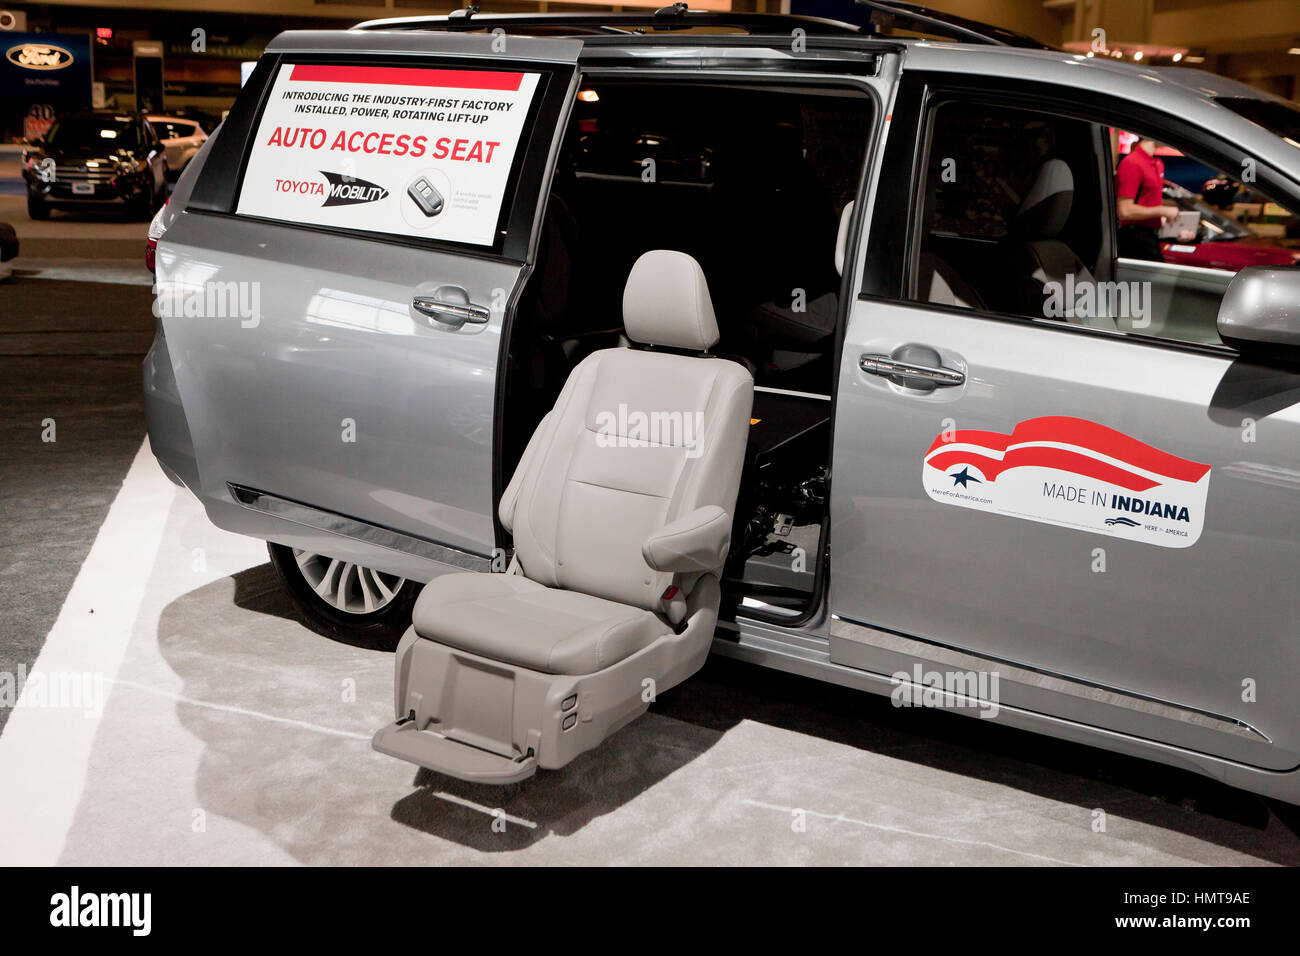 Toyota mobilità Accesso automatico sedile in Sienna minivan display a 2017 Washington Auto Show - Washington DC, Stati Uniti d'America Foto Stock